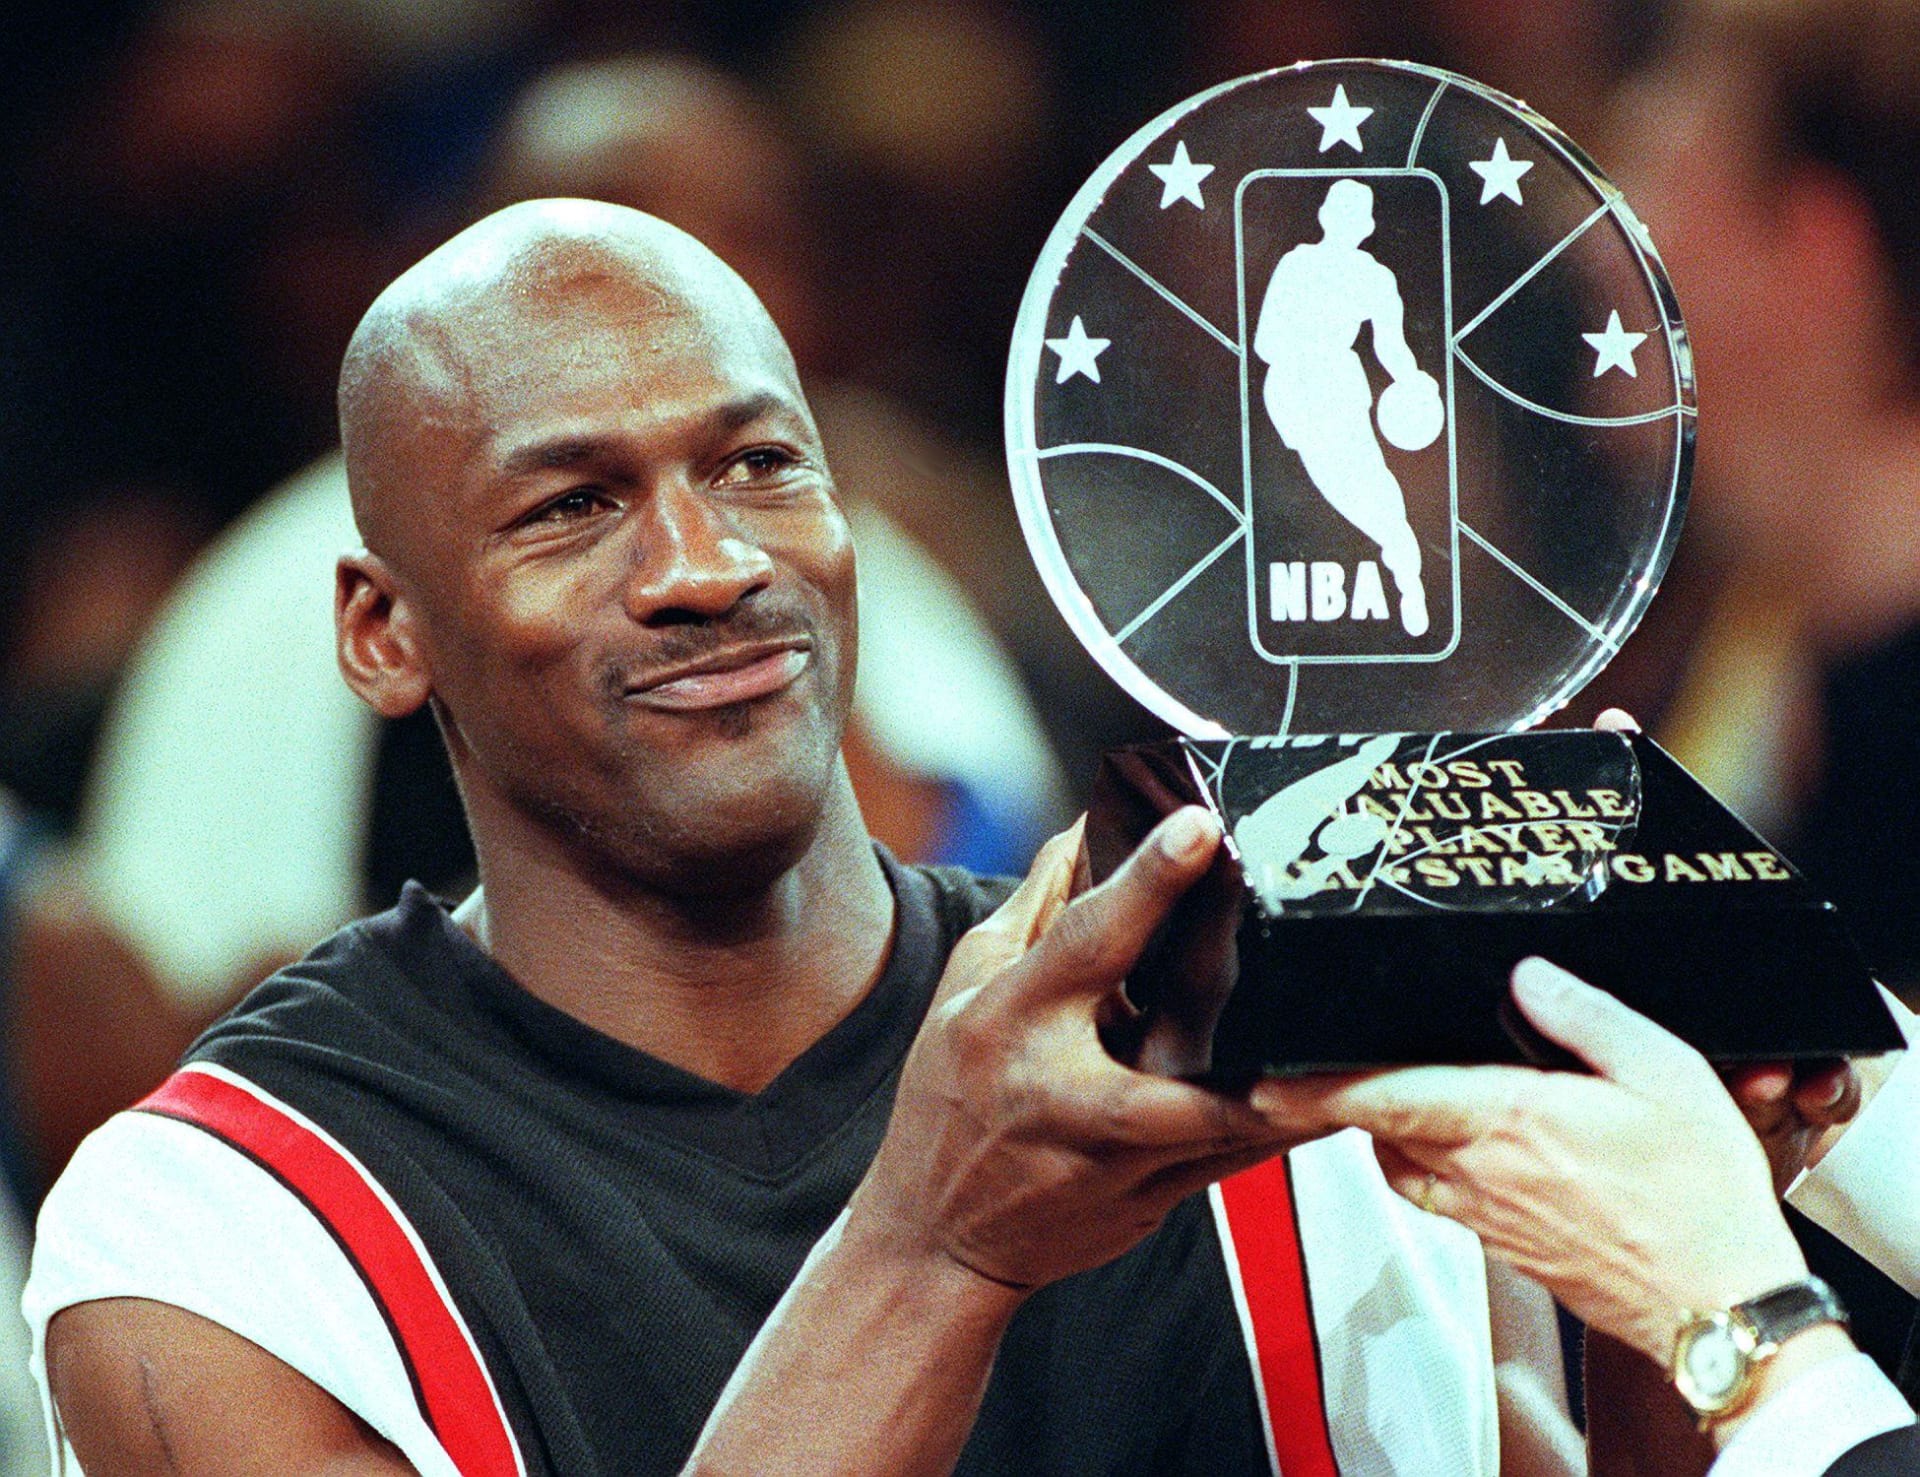 5 nguyên tắc kiếm tiền của Michael Jordan khiến người hâm mộ chỉ biết trầm trồ